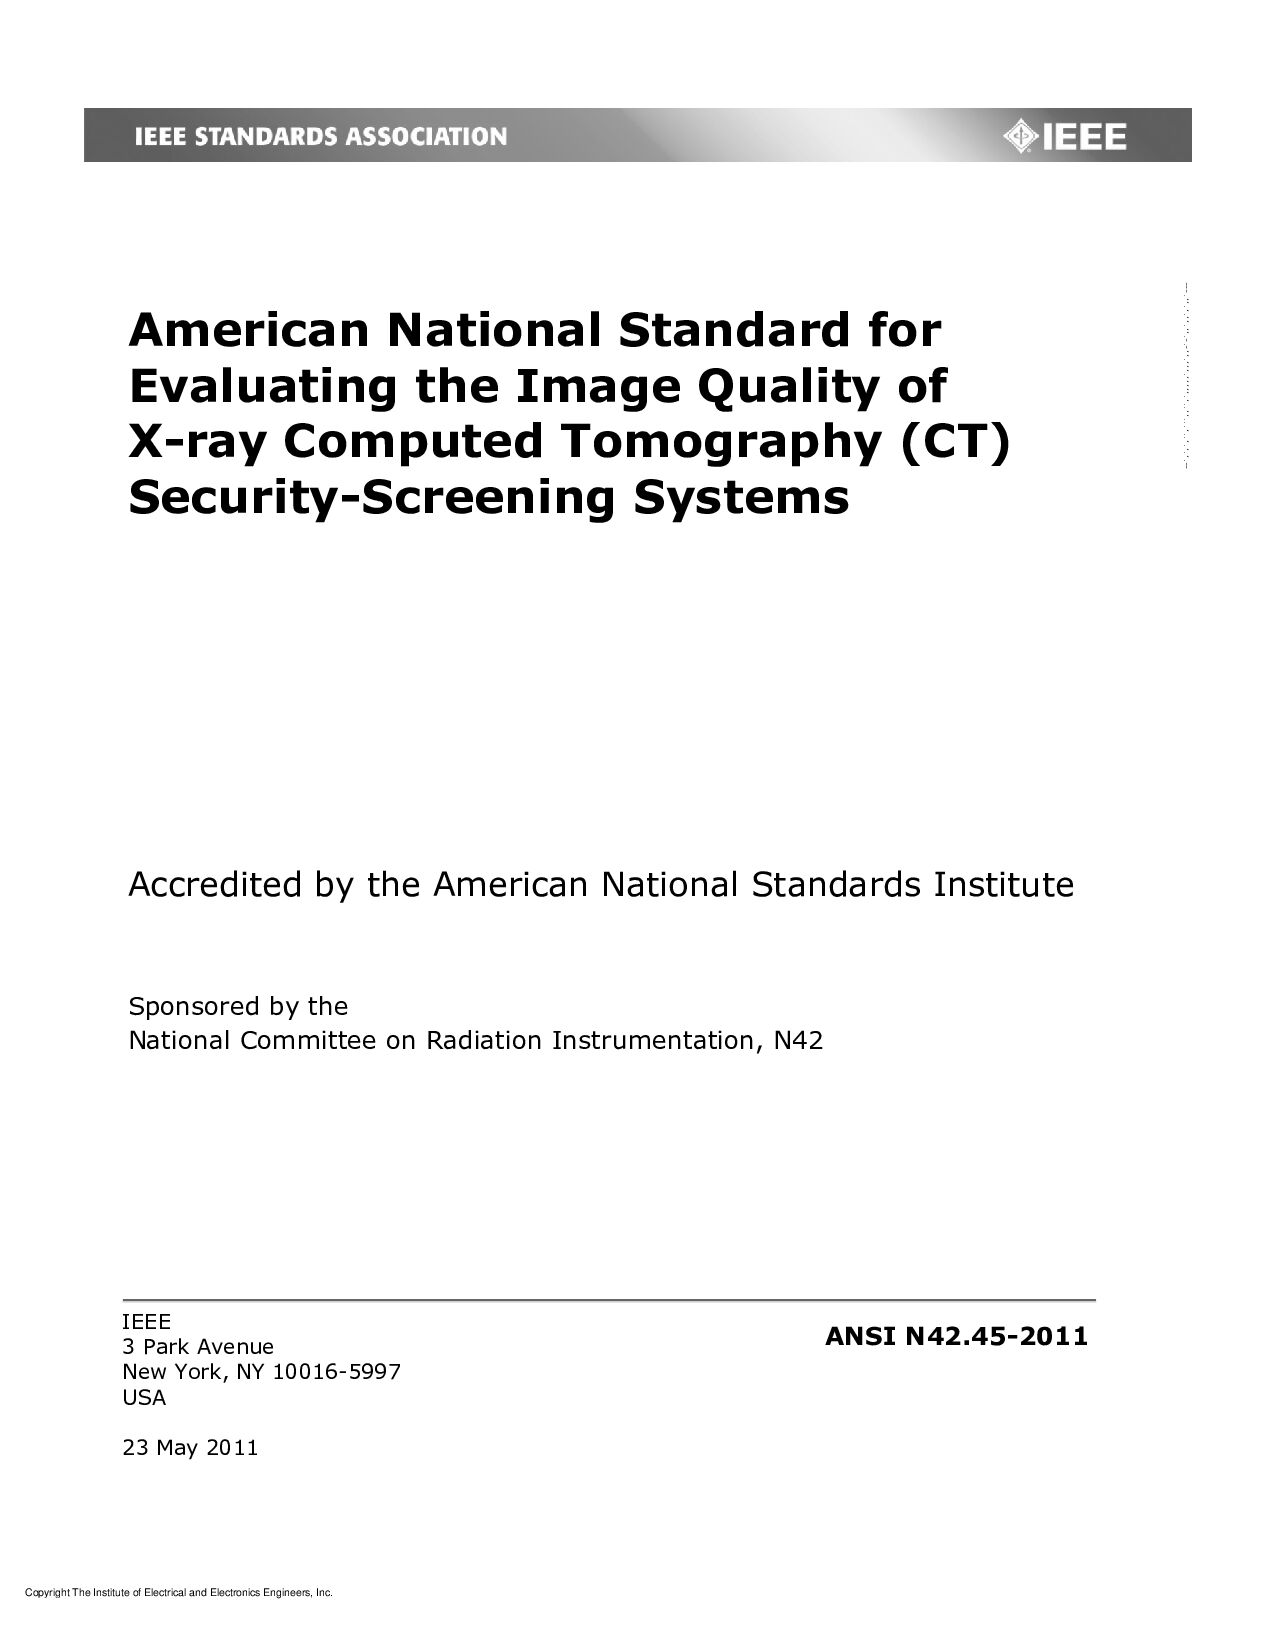 IEEE/ANSI N42.45-2011